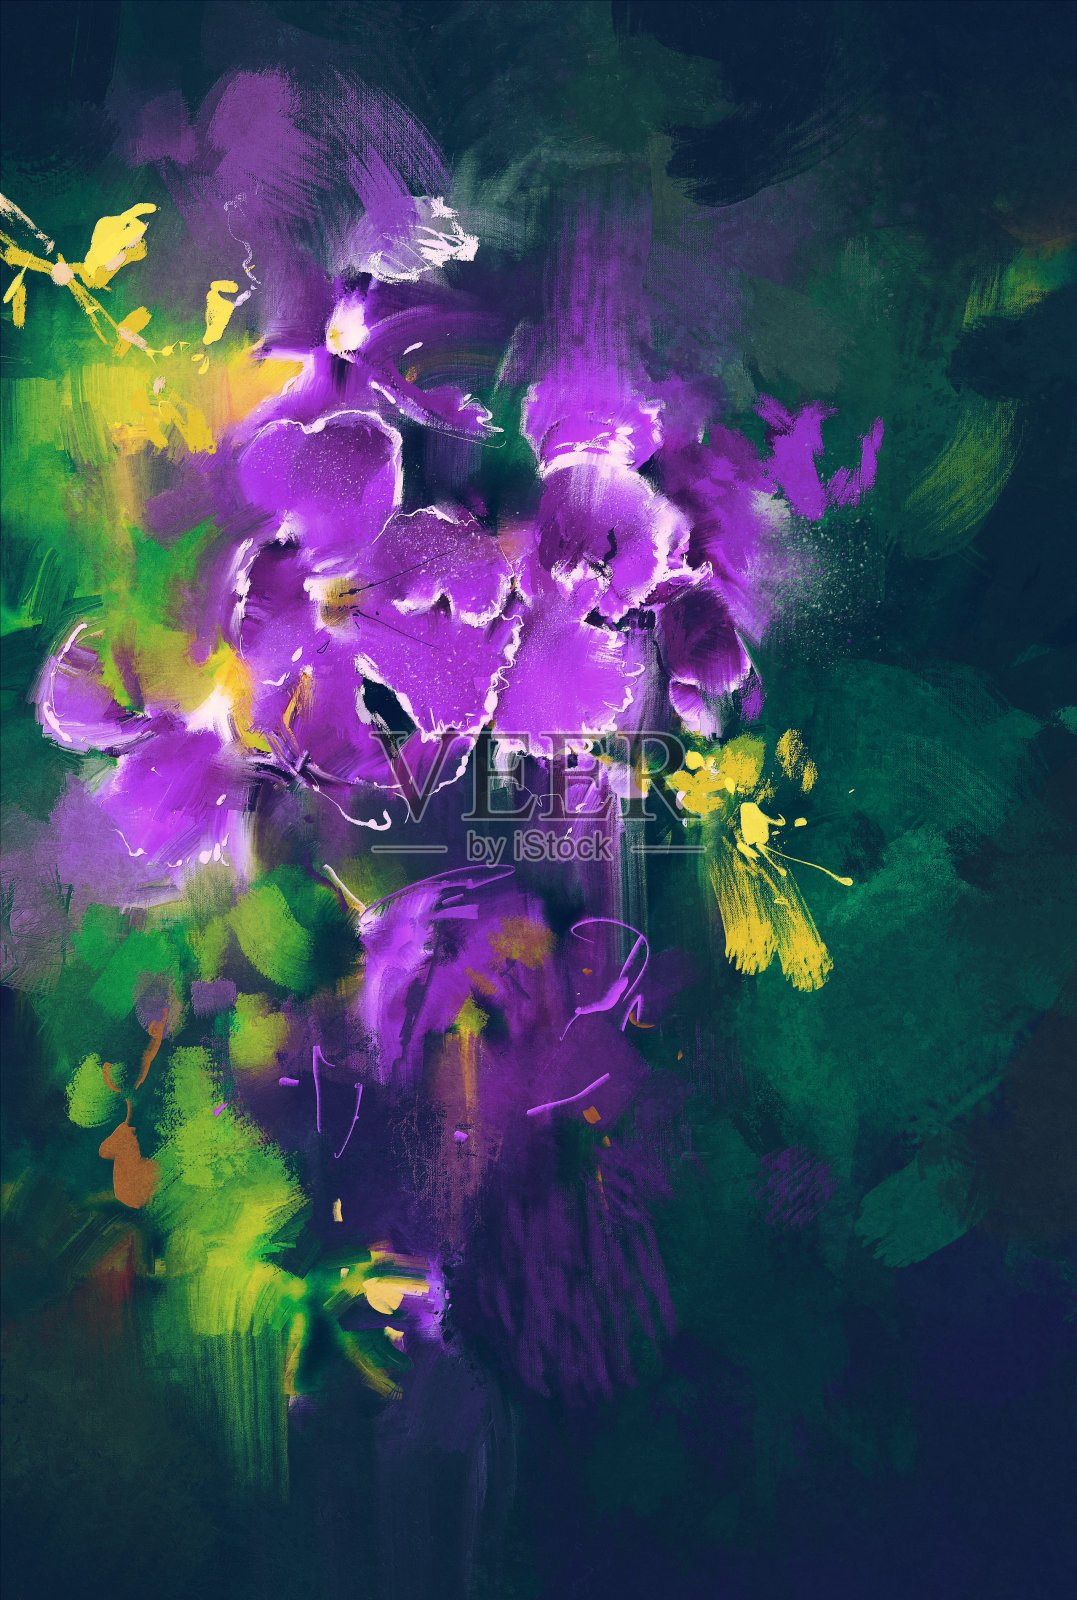 暗色背景下的紫色花朵插画图片素材